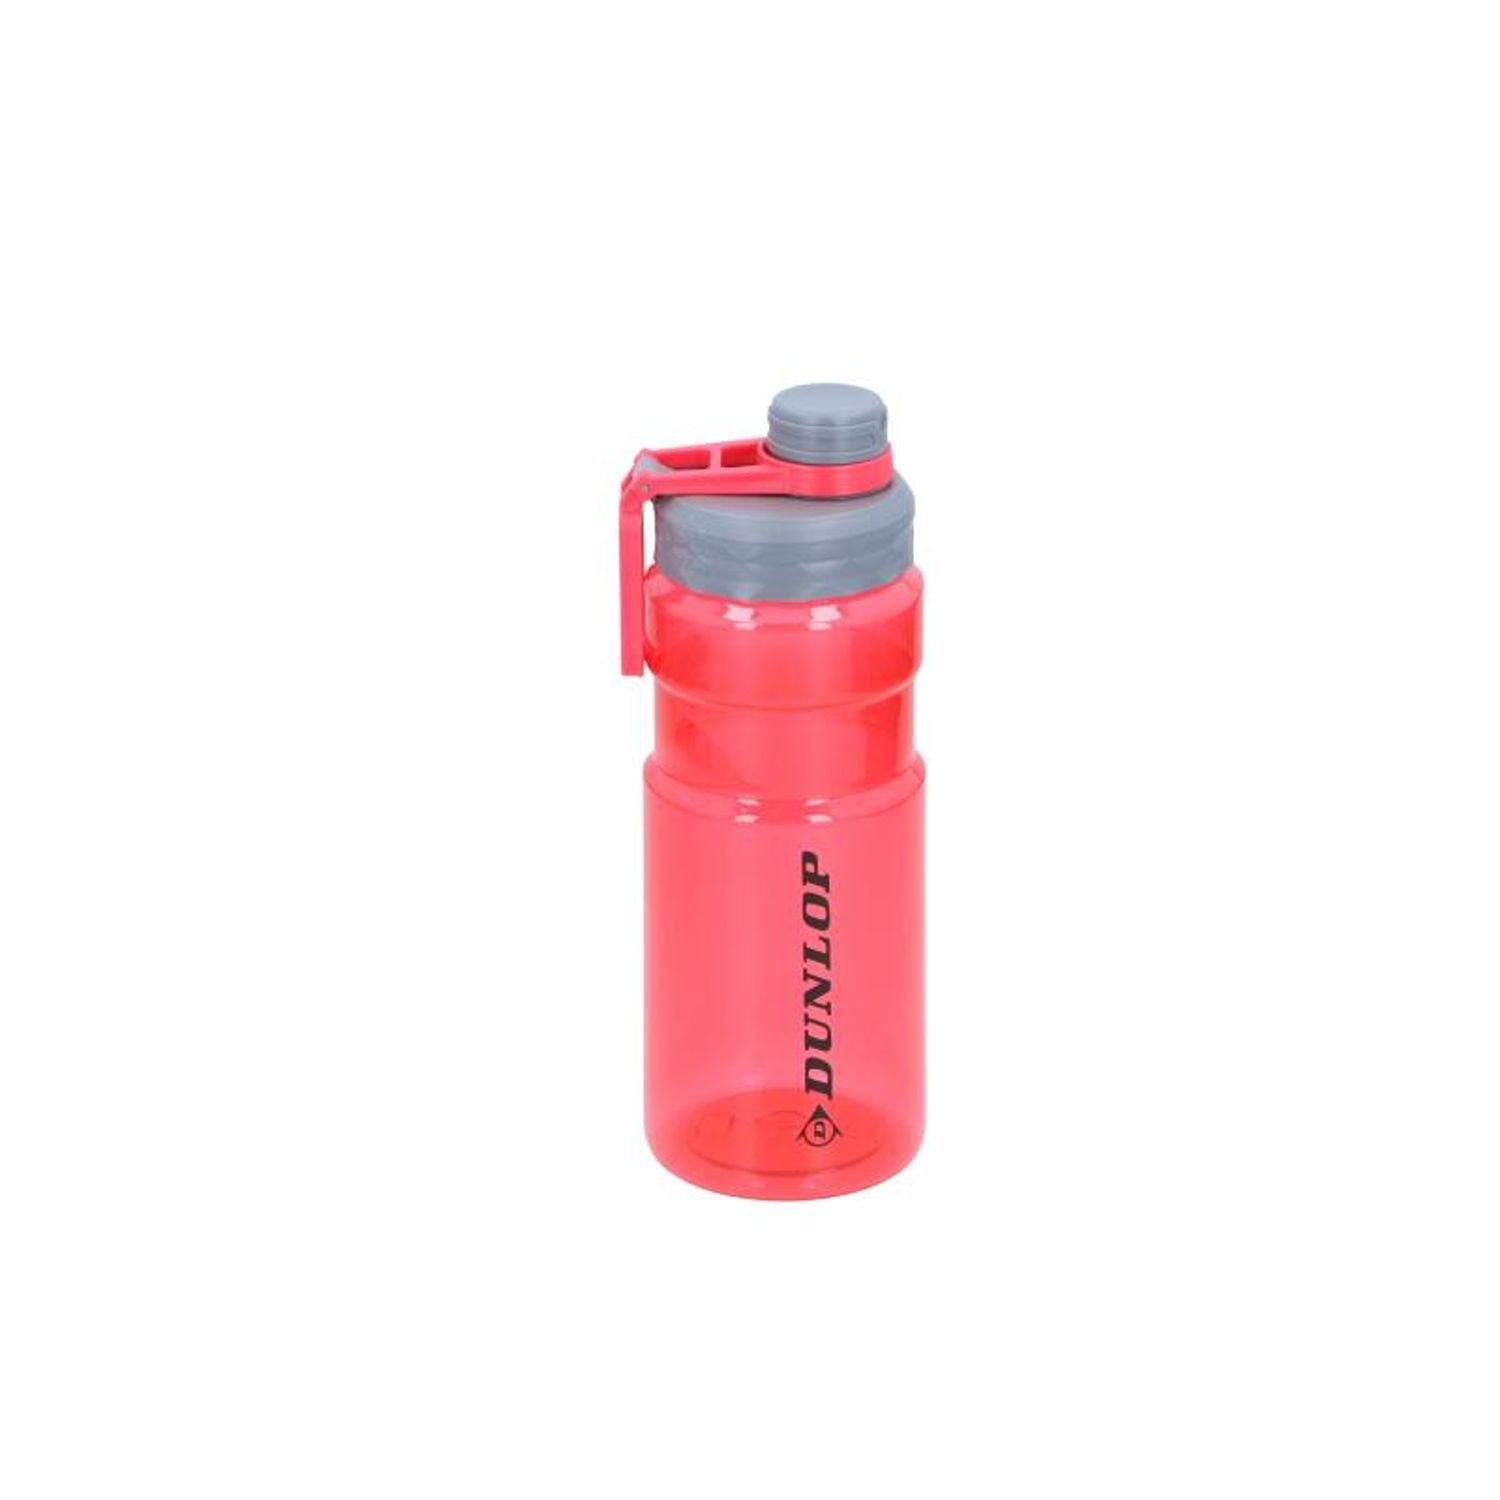 Trinkflasche Dunlop Wasser EDCO 12x Sport Wasser Trinken Trinkflasche 1,1L Camping